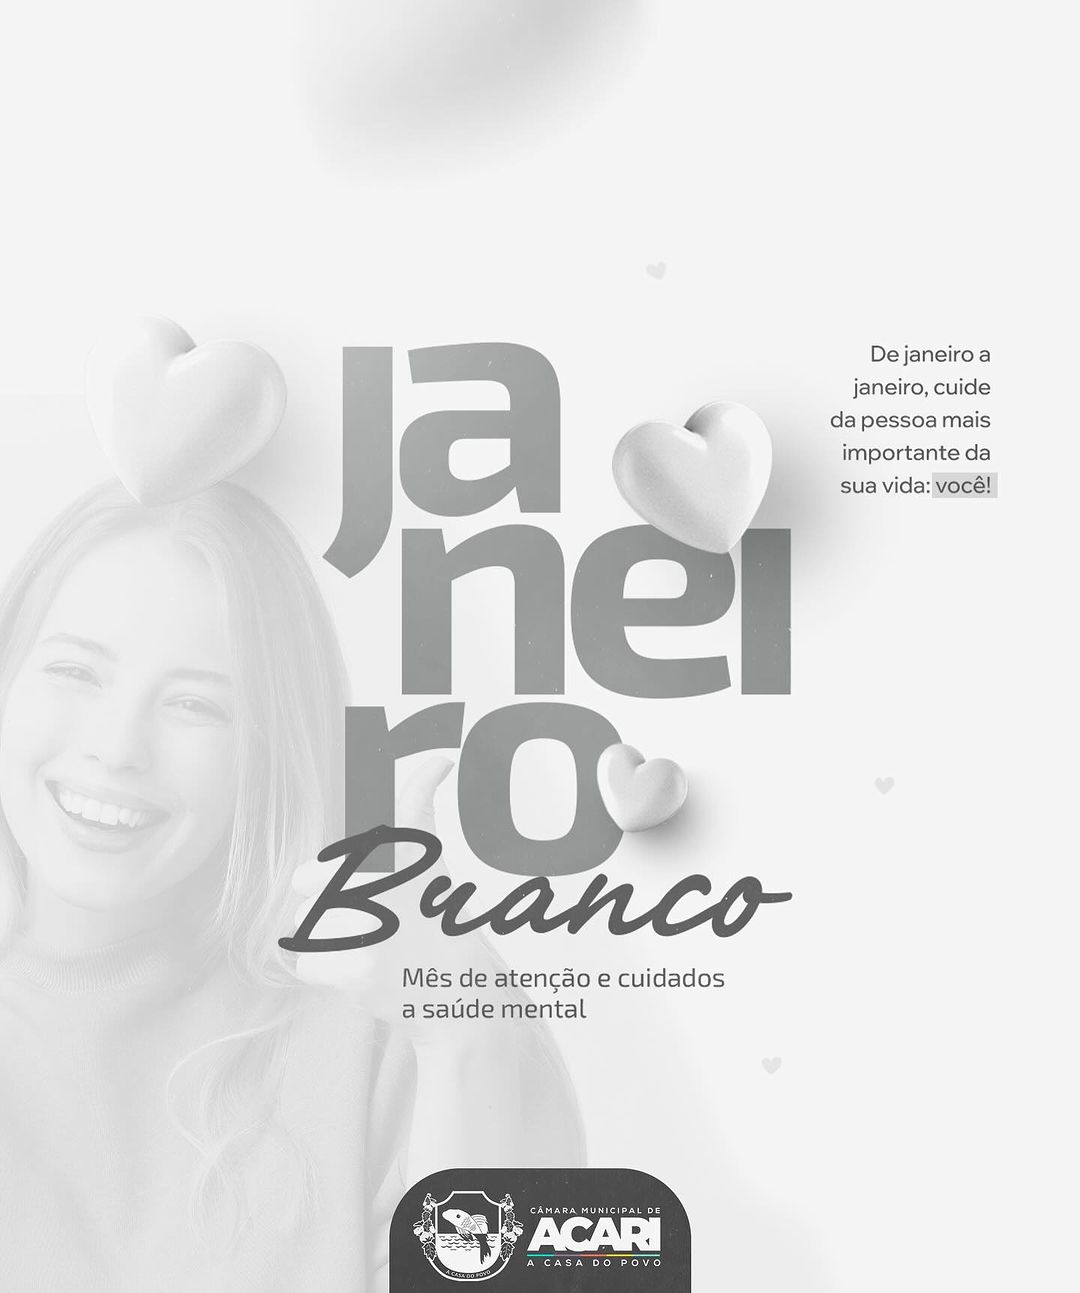 JANEIRO BRANCO